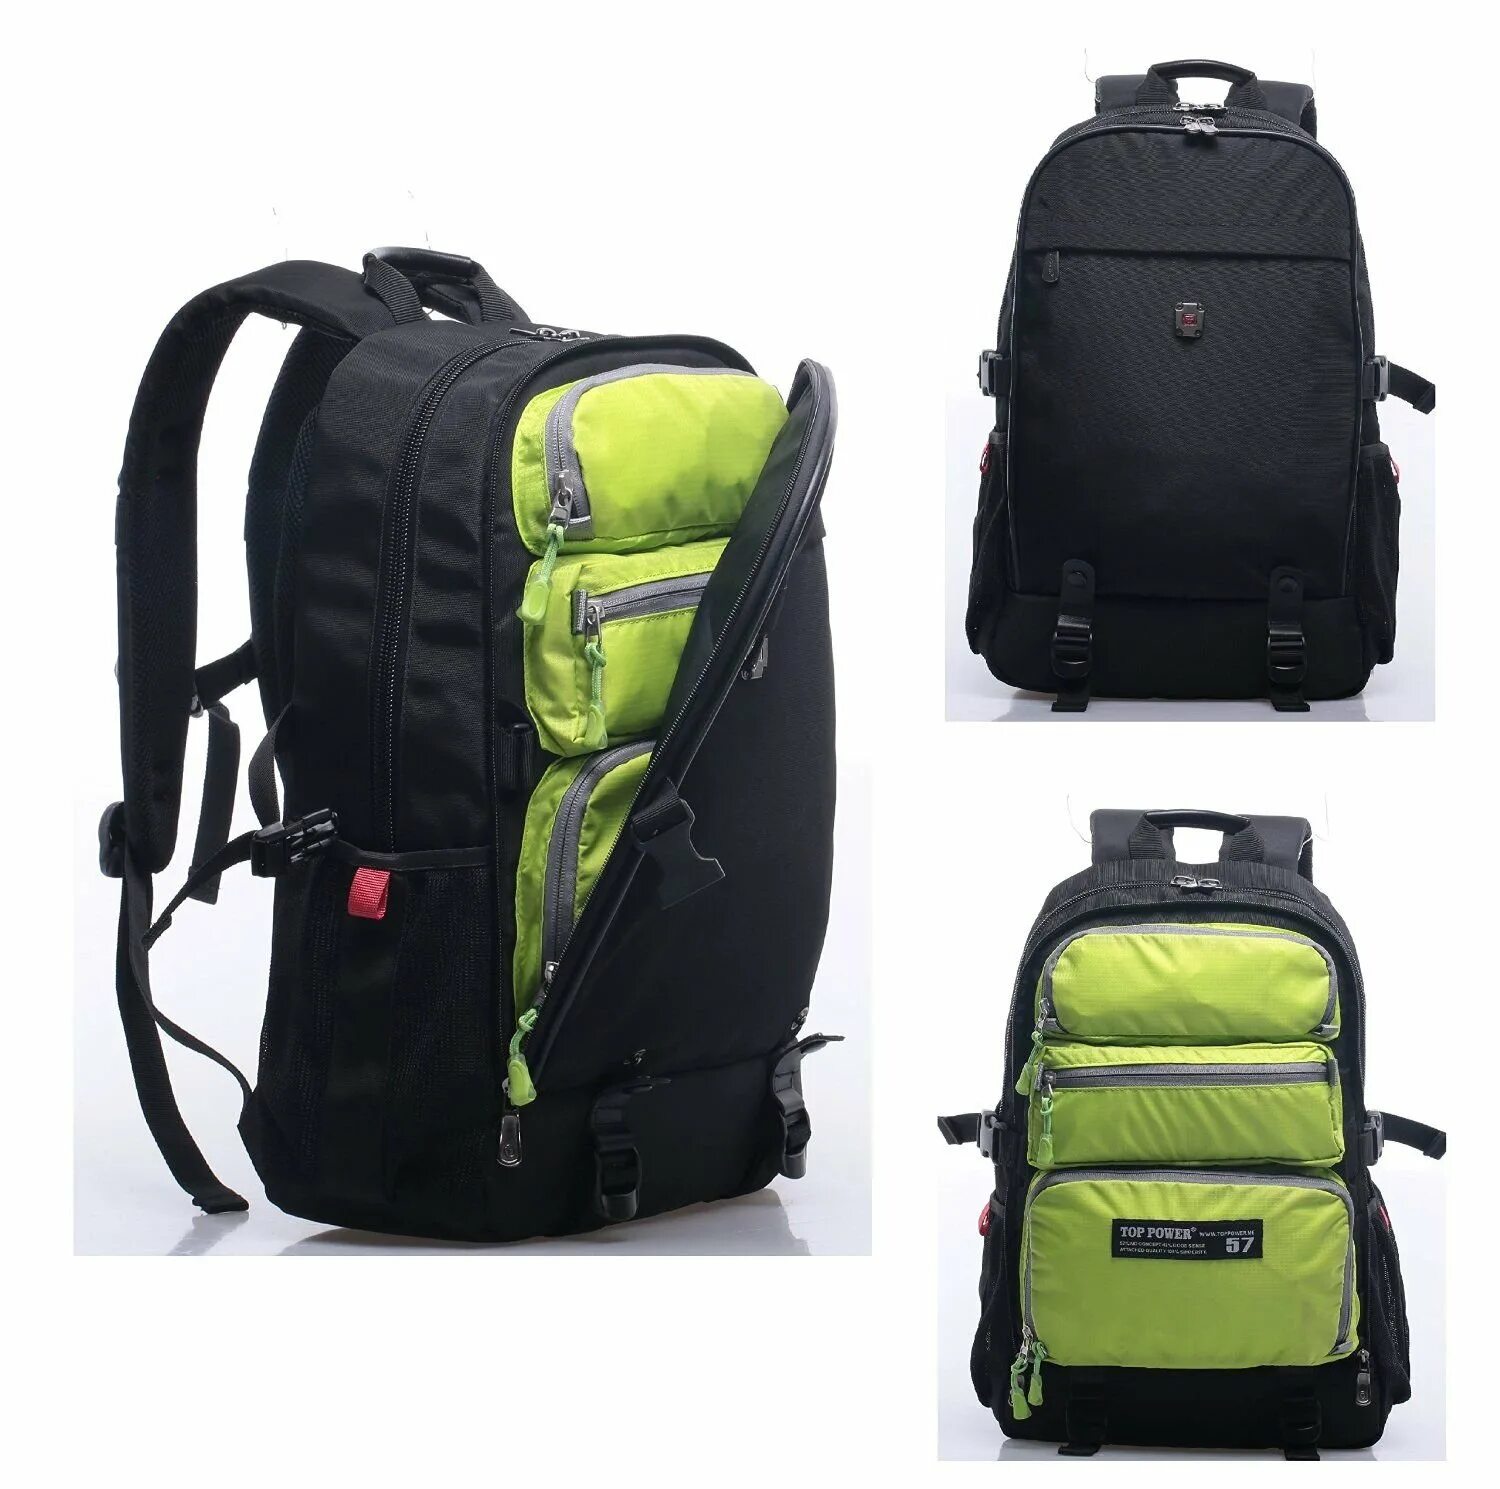 Рюкзак для путешествий самолетом. Рюкзак туристический Osprey Farpoint | Fairview Travel Daypack 15 зеленый. Laptop compartment рюкзак. Рюкзак Top Power mj22801ad. Рюкзак спортивный Caribee Comet 32.